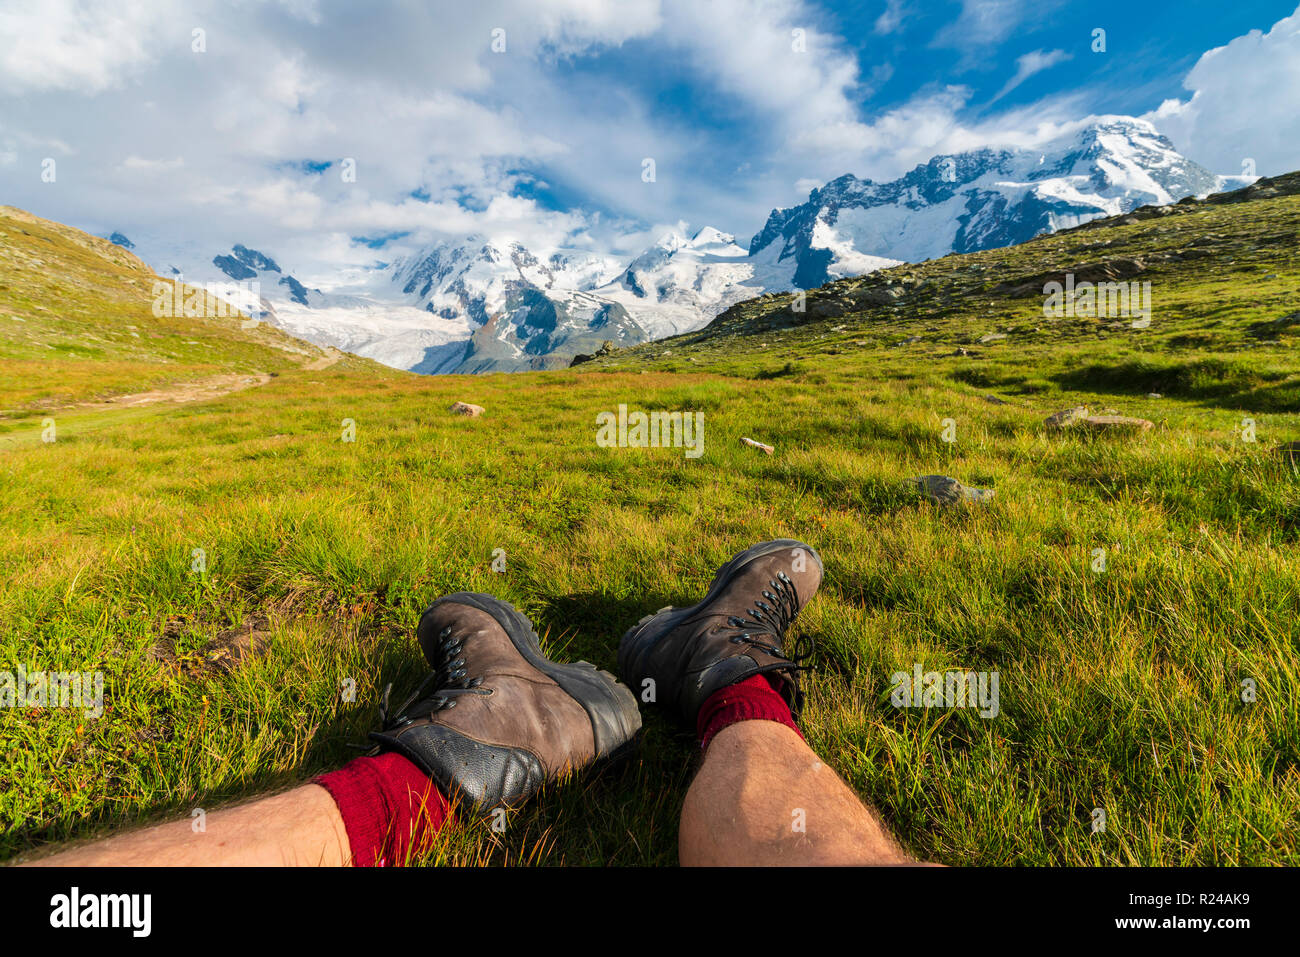 Escursionista poggia sull'erba guardando verso il Monte Rosa massiccio, Riffelalp, Zermatt, canton Vallese, alpi svizzere, Svizzera, Europa Foto Stock